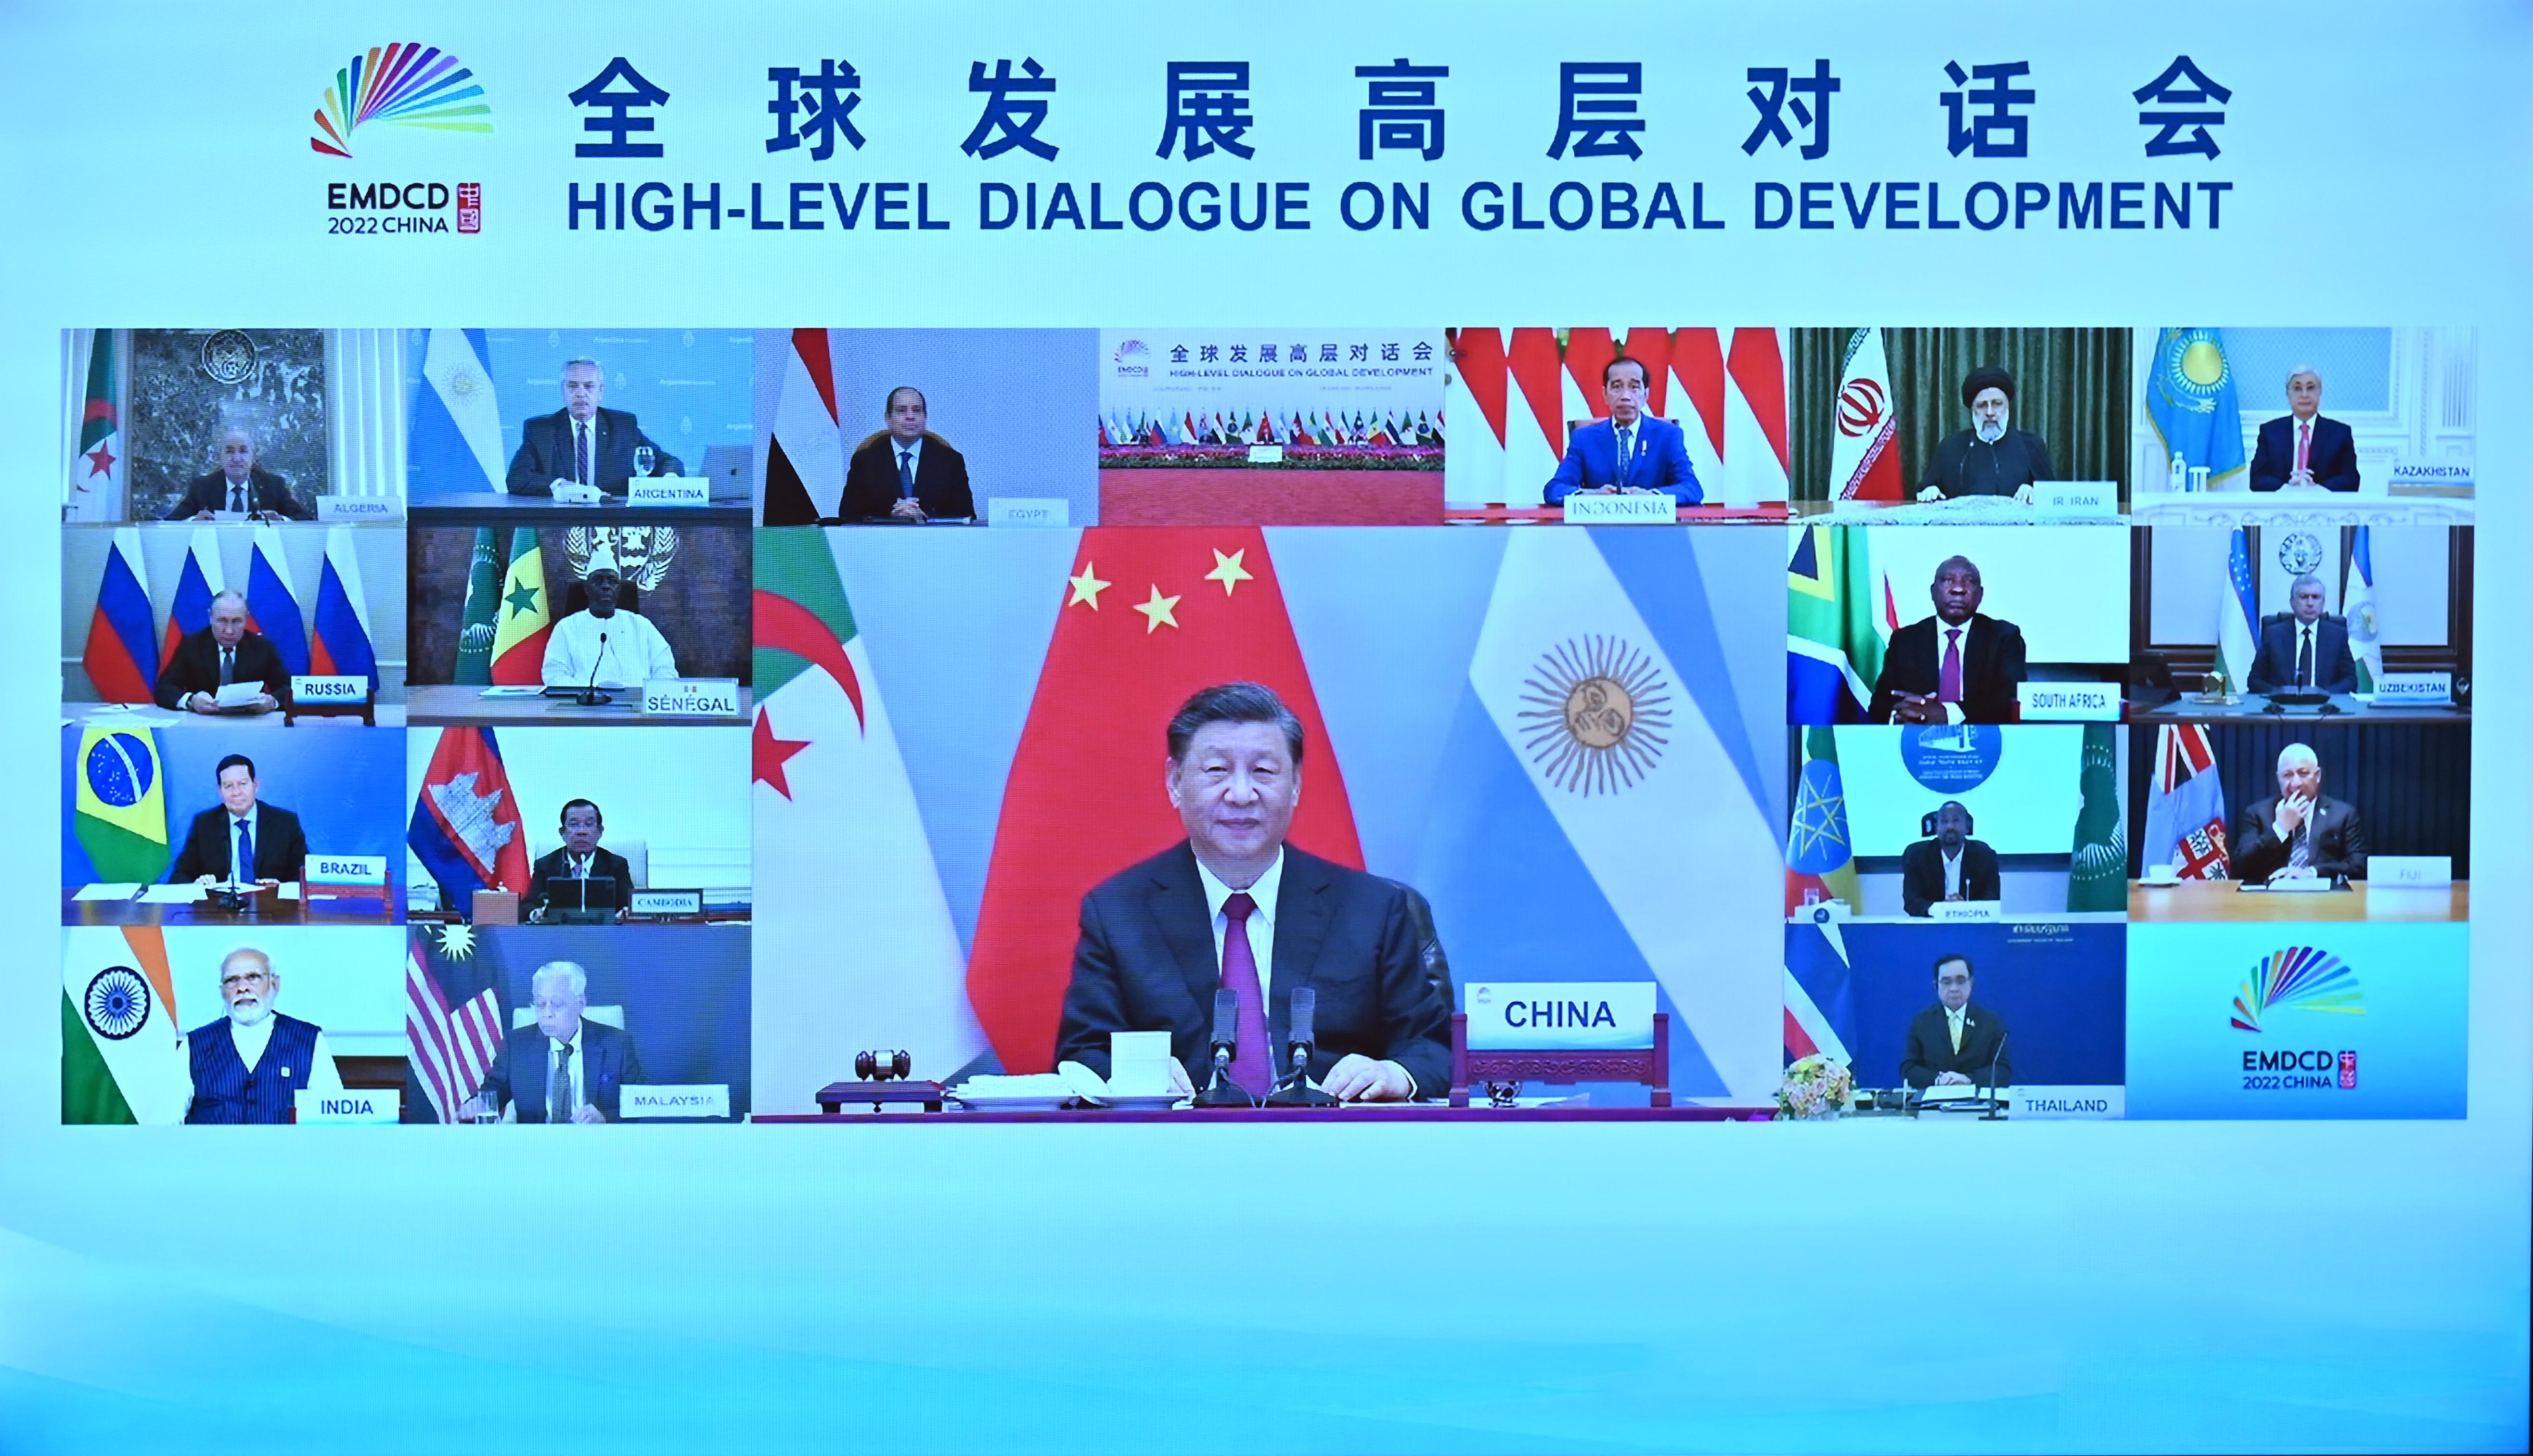 Kazakistan Cumhurbaşkanı, Küresel Kalkınma BRICS+ Üzerine Üst Düzey Diyalog'a katılıyor